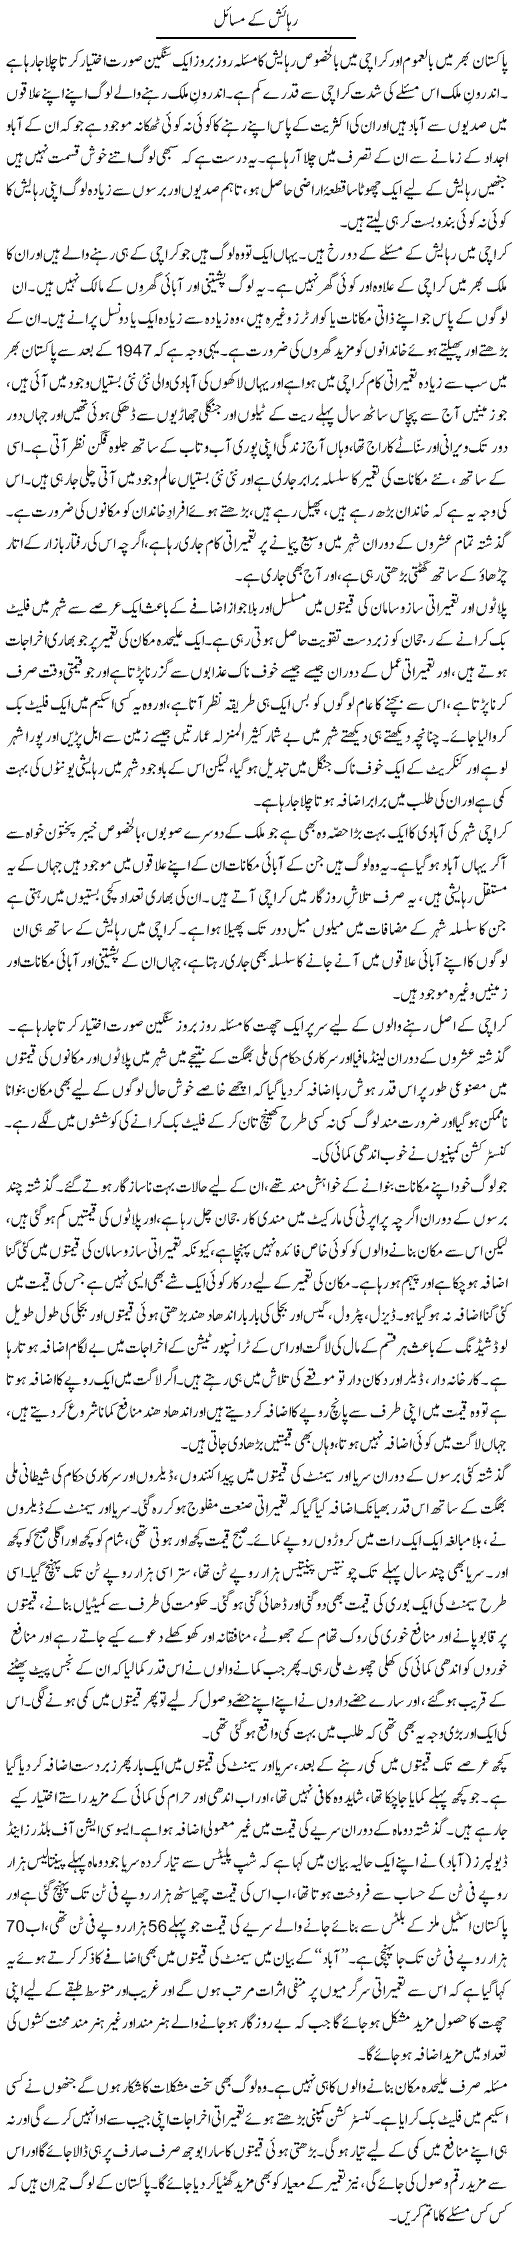 Rahaish Express Column Anwar Hasan 18 May 2010